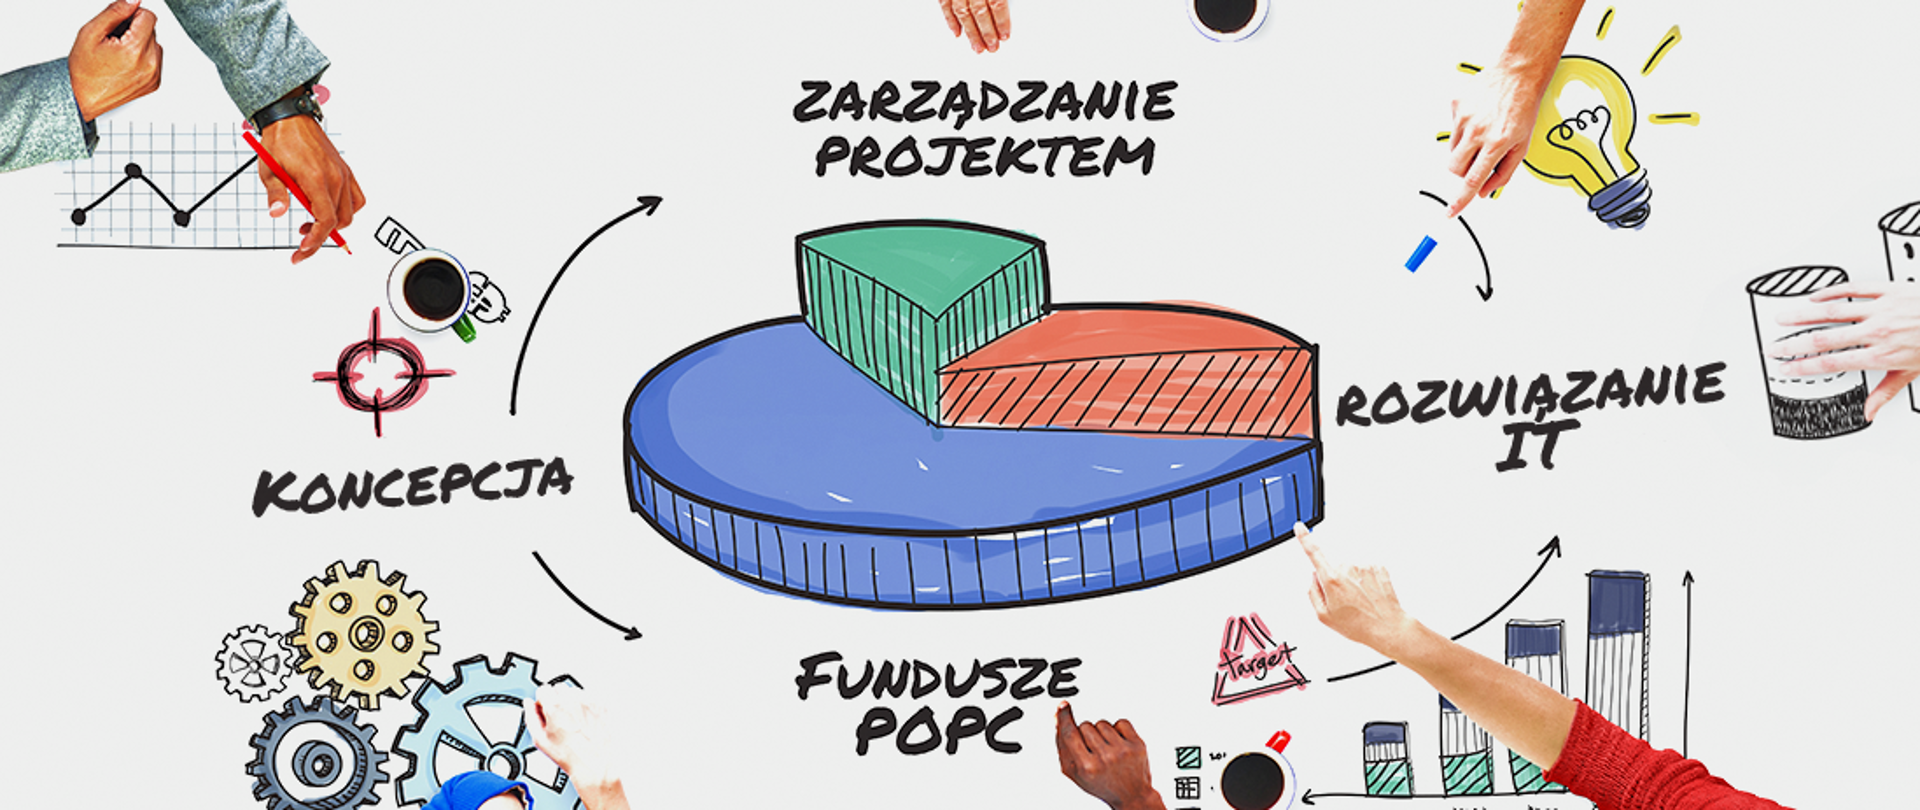 Ikonografika pokazuje relacje pomiędzy koncepcją projektu, funduszami POPC, zarządzaniem projektem i rozwiązaniem IT.